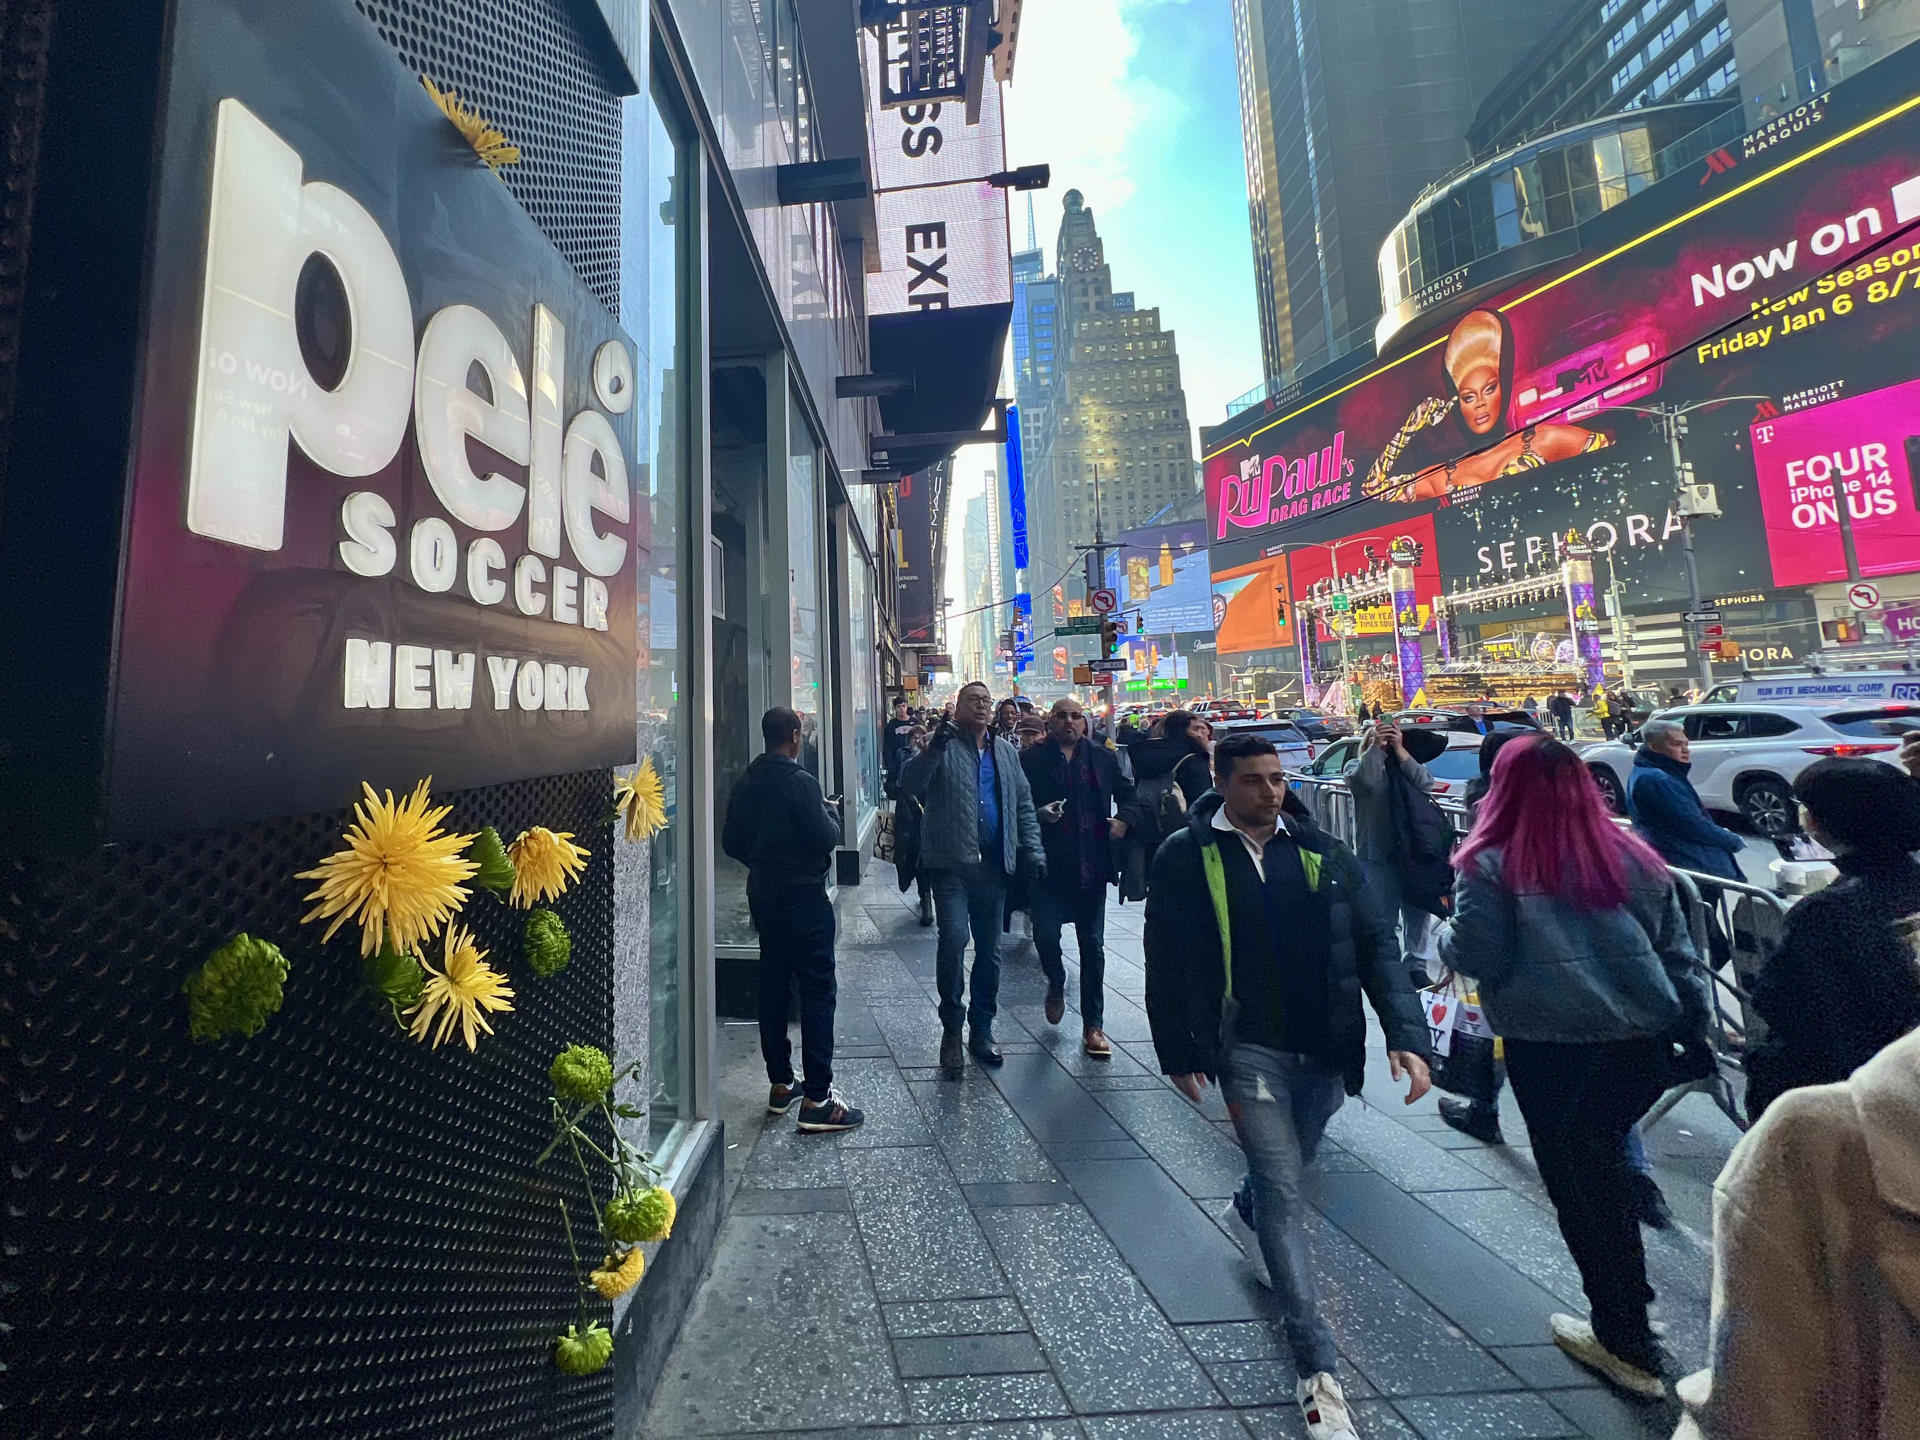 Flores amarillas y verdes en Times Square recuerdan a Pelé tras su muerte